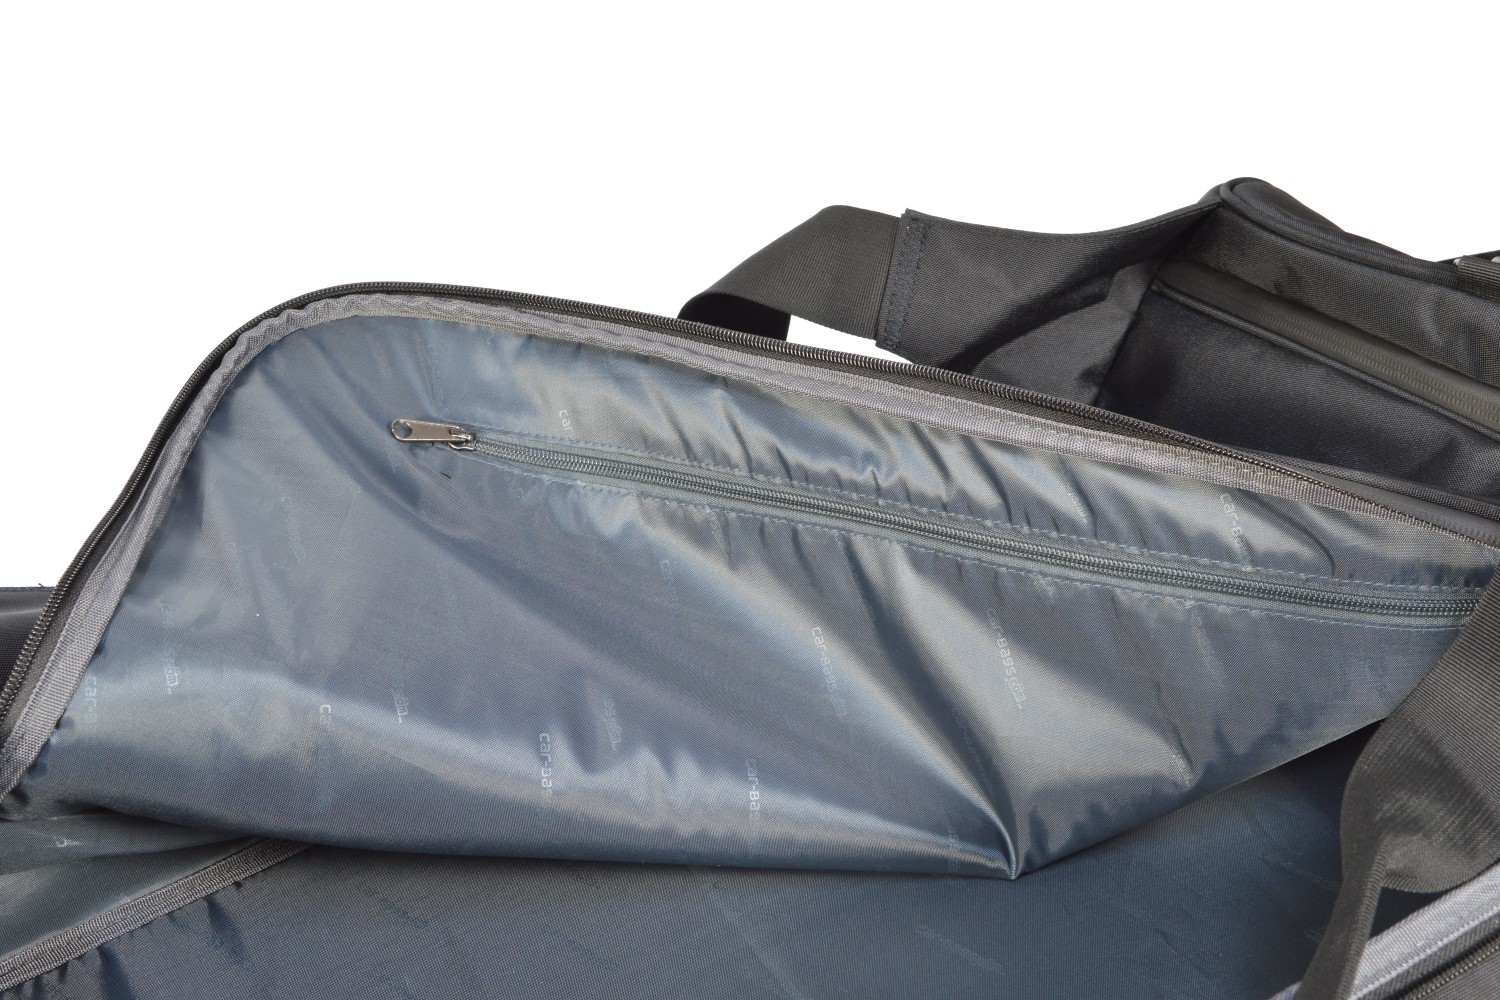 Maßgefertigtes Reisetaschen Set für Alfa Romeo Stelvio - Maluch